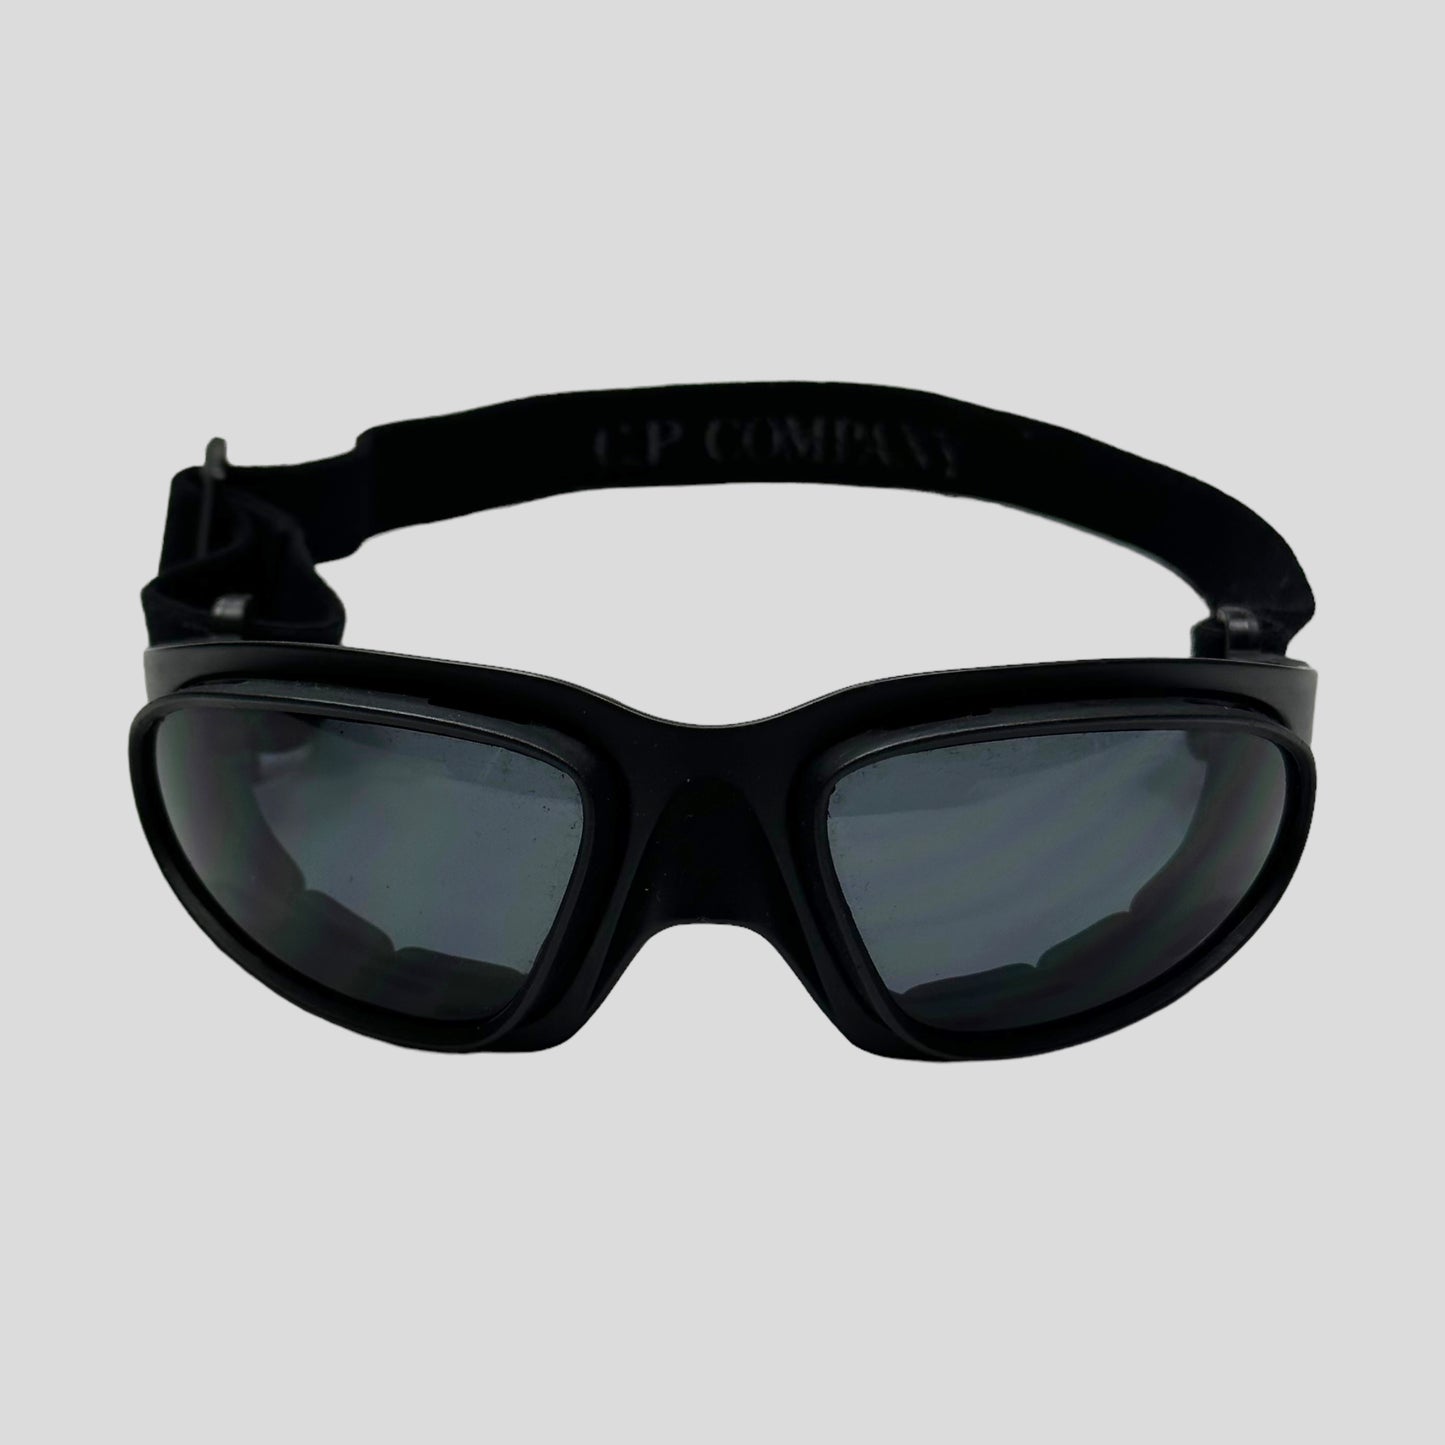 CP Company SS08 Baruffaldi Technical Goggle Watchviewer Jacket - IT52